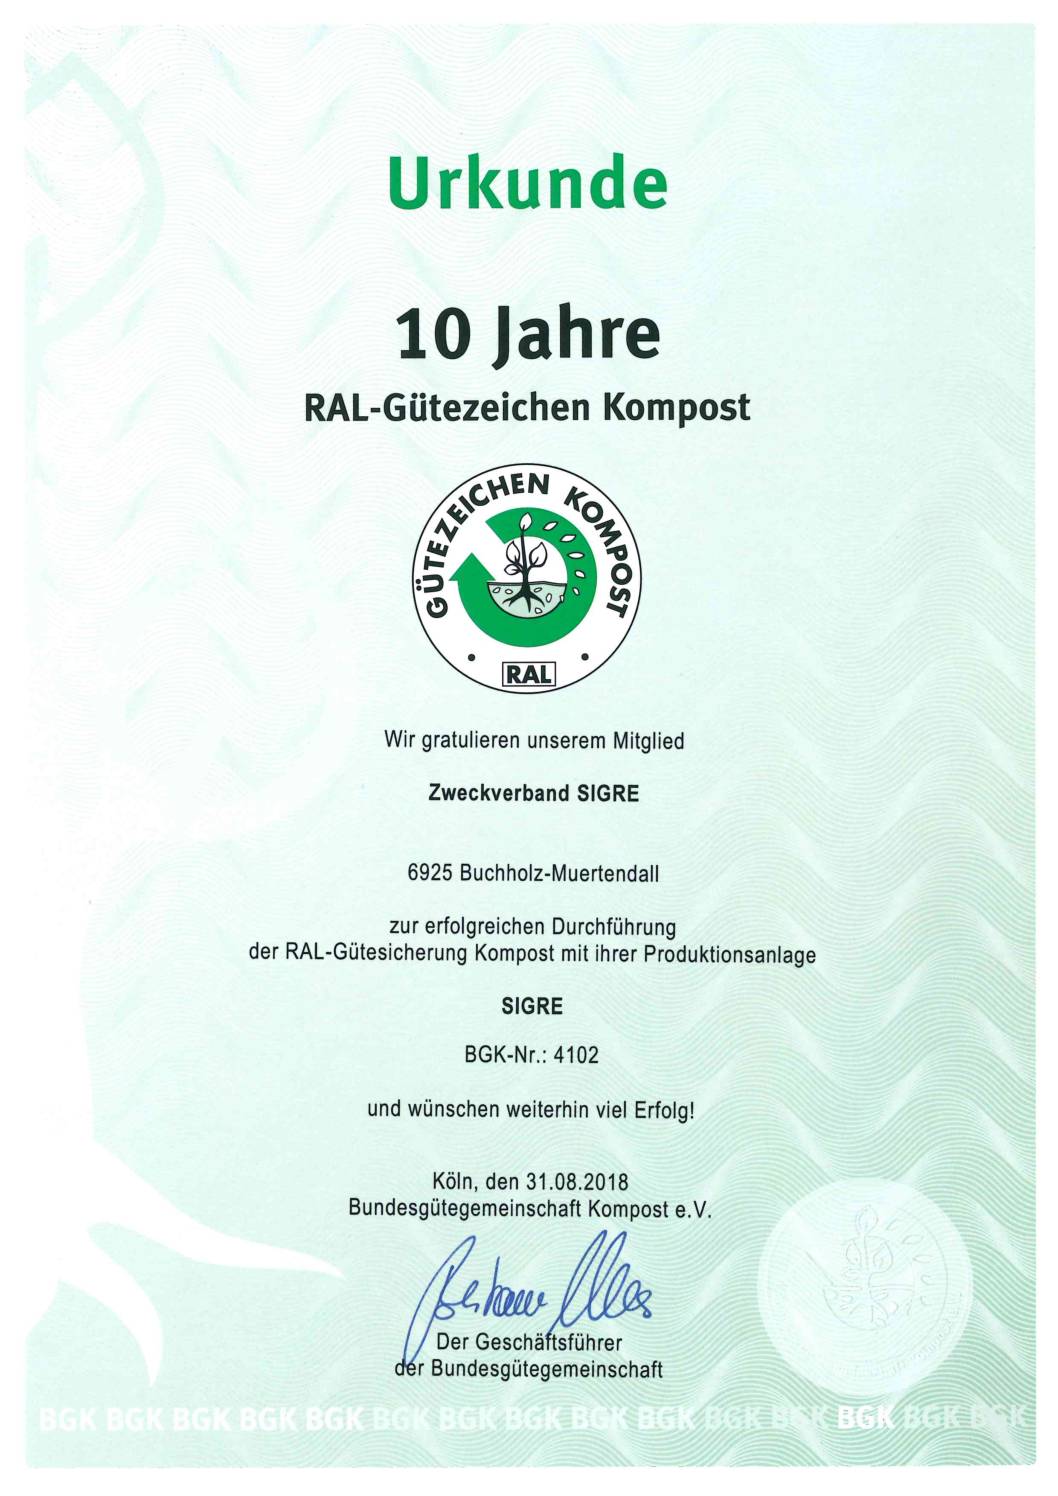 RAL-Gütezeichen-Kompost-10-Jahres-Urkunde